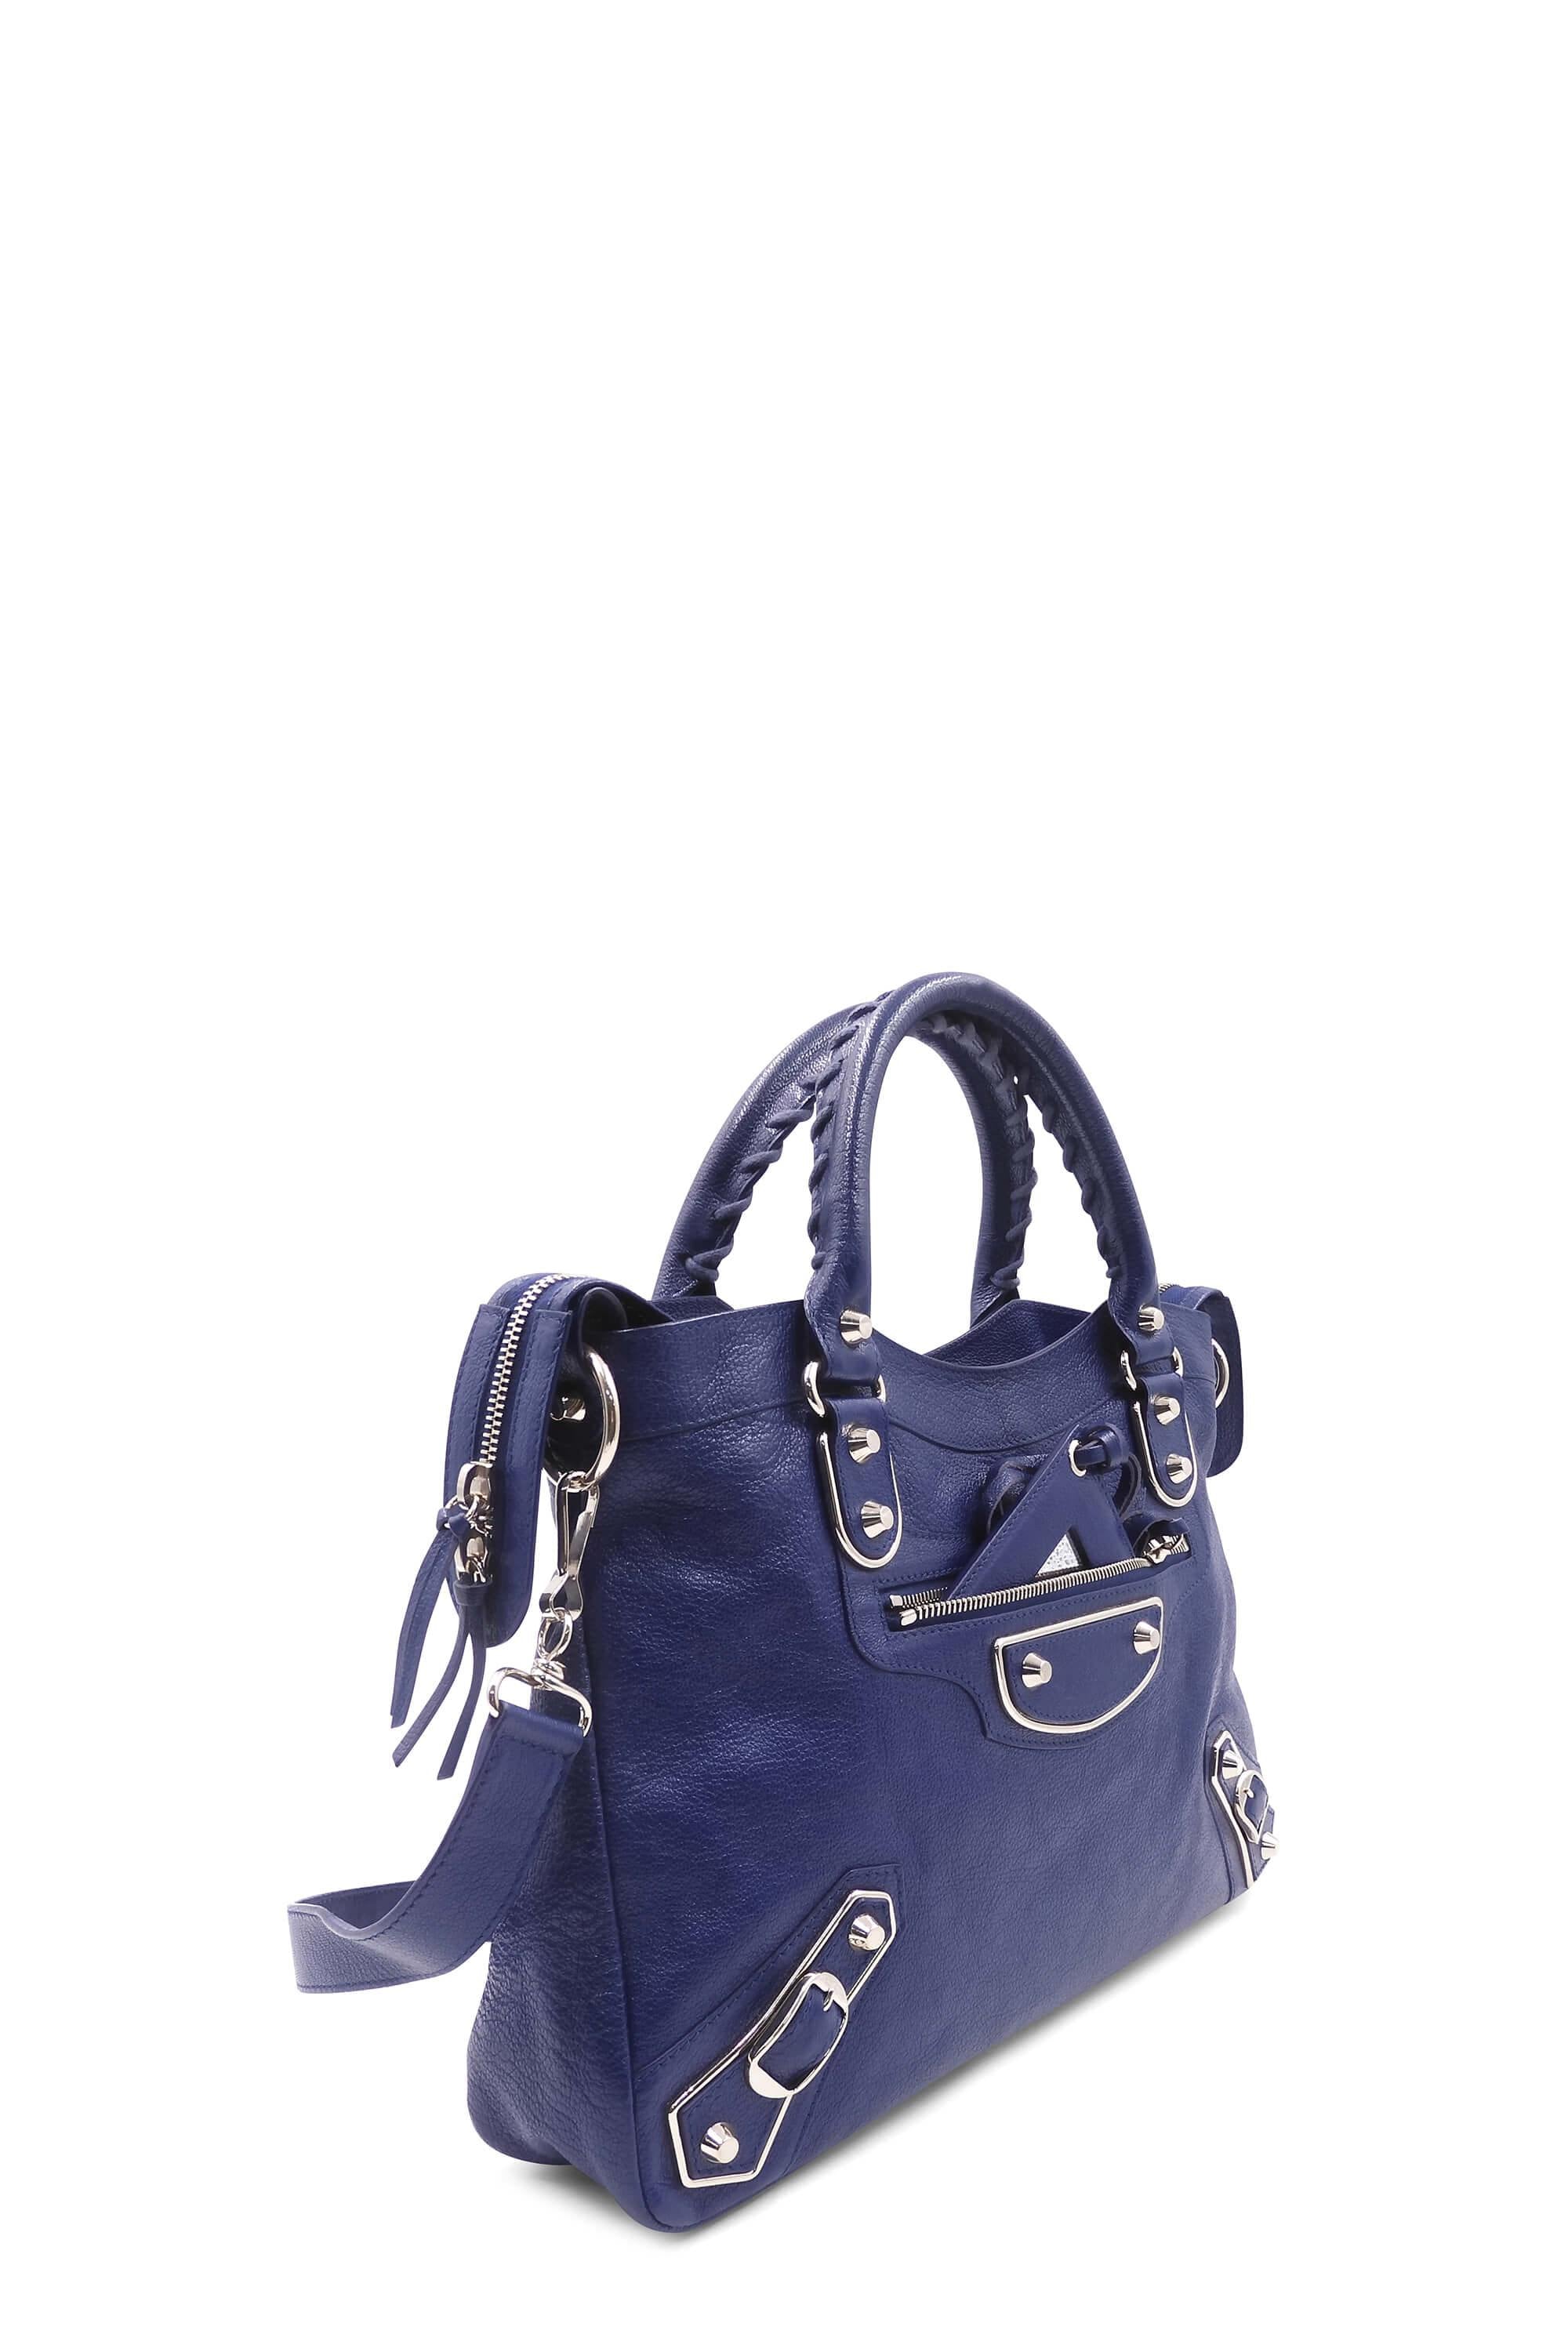 Authentic Balenciaga Metallic Edge Town Handbag Blue Grey 2450  eBay